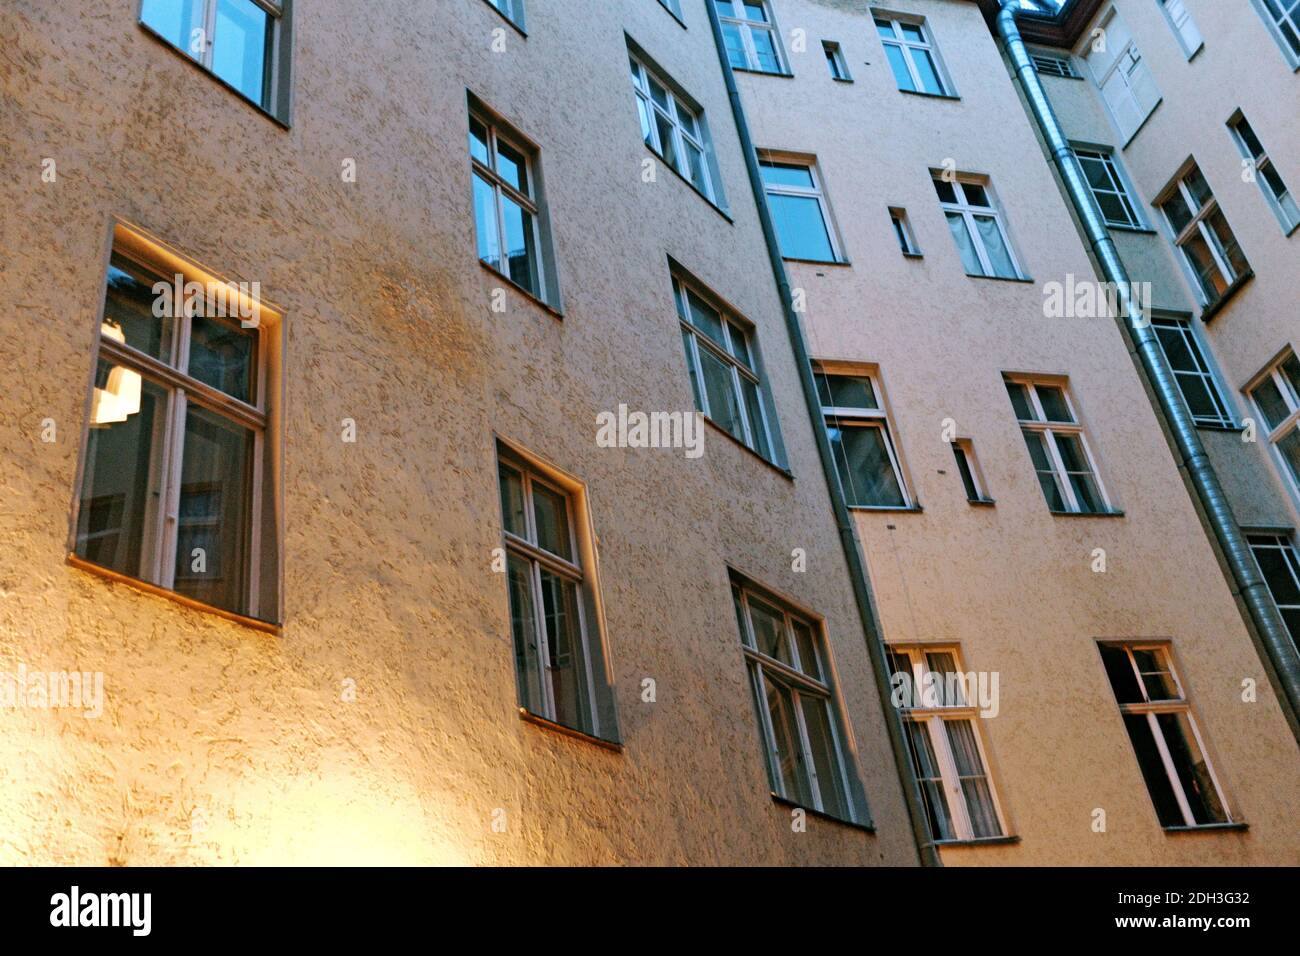 Hauppstrasse 155 immeuble d'appartements dans le quartier de Schonenberg à Berlin, en Allemagne, est où David Bowie et Iggy Pop ont été colocataires. L'appartement qu'ils ont partagé est l'endroit où il a créé la trilogie berlinoise des albums devenant un point de repère dans le quartier après la mort de Bowie le 10 janvier 2016. Banque D'Images